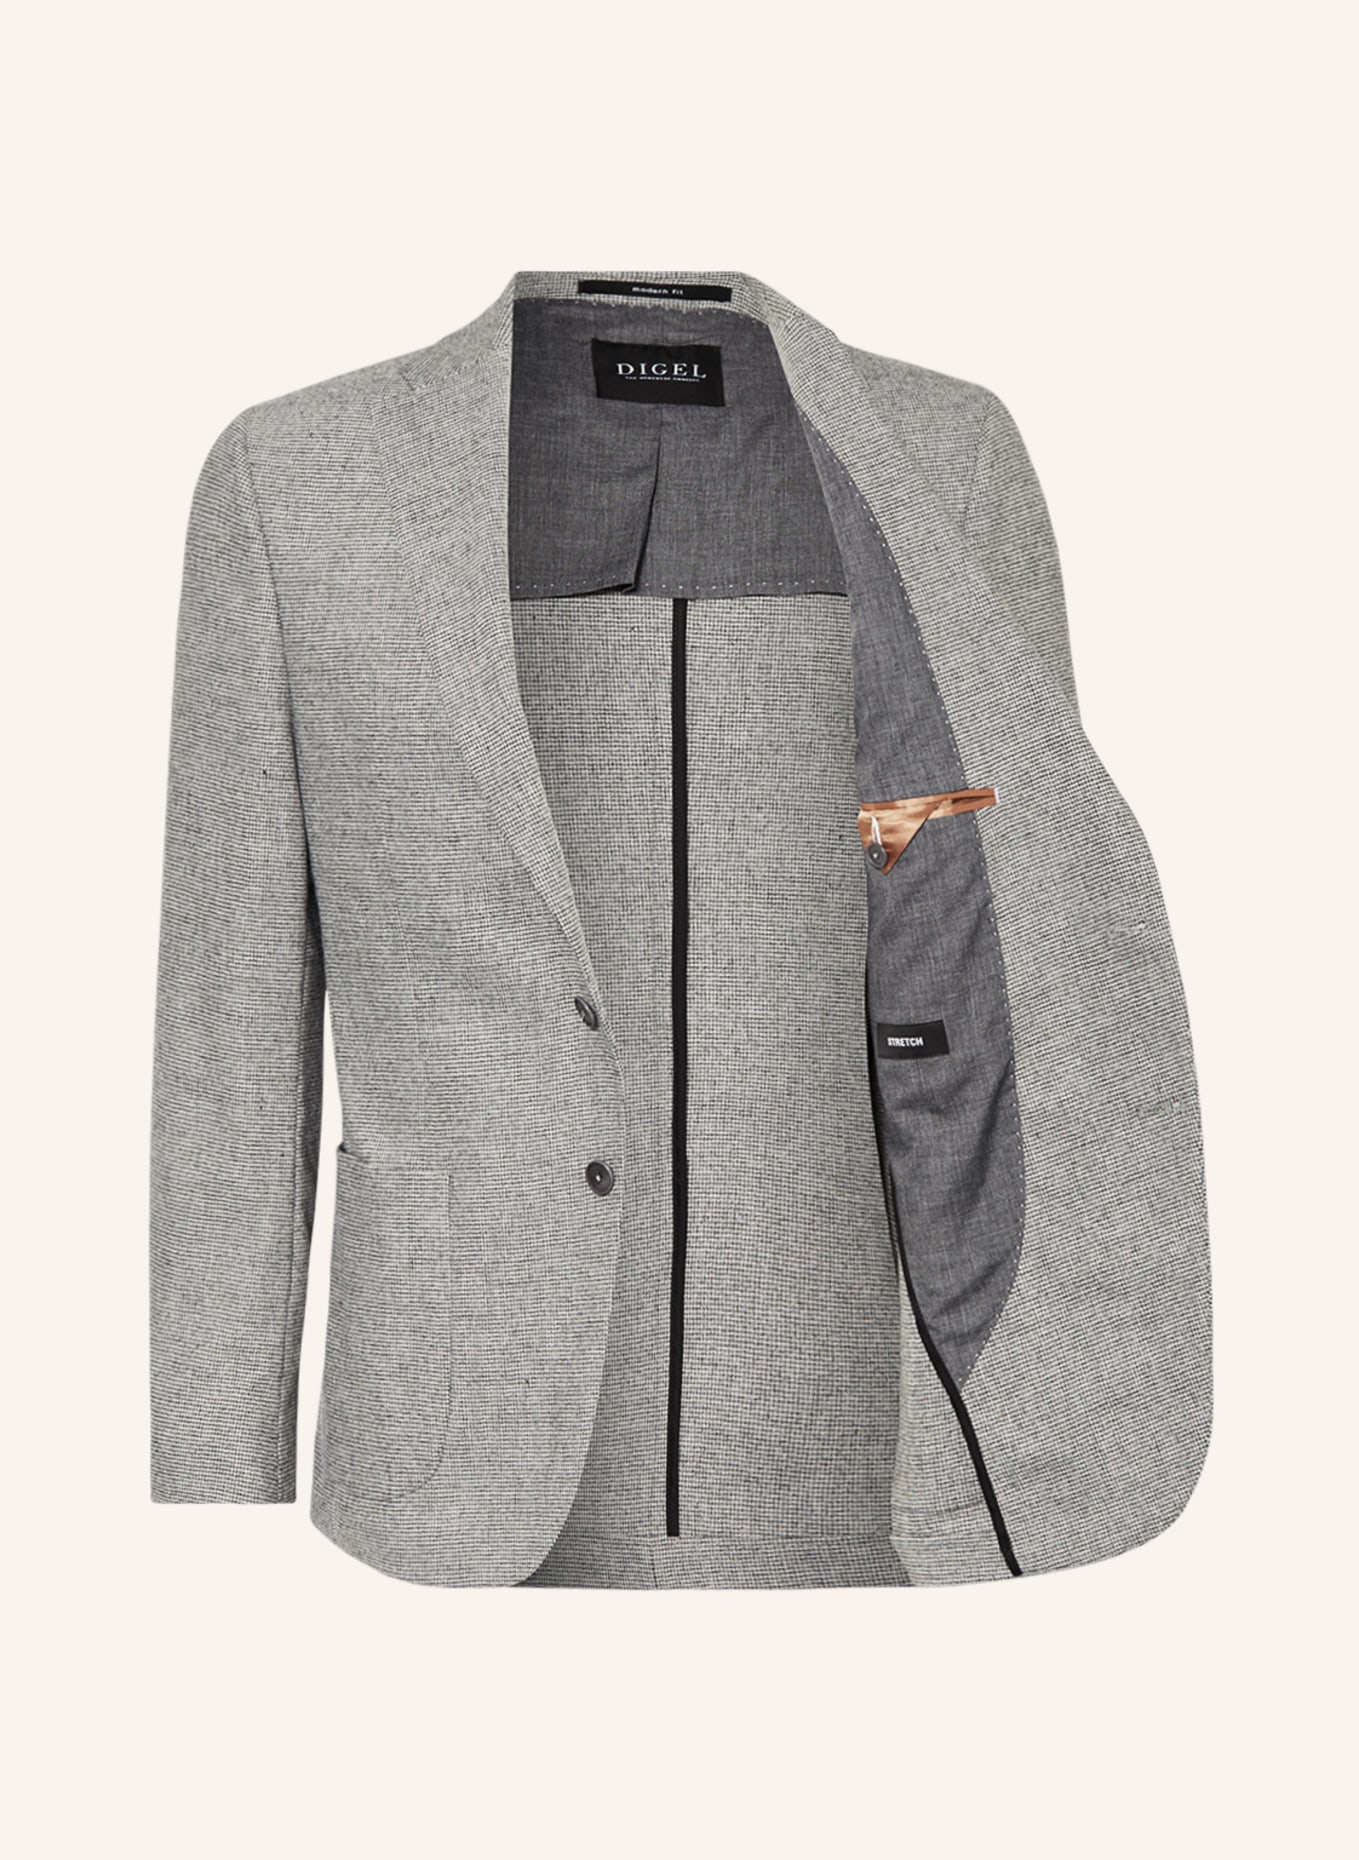 DIGEL Suit jacket EDWARD Regular Fit, Color: 44 GRAU (Image 4)